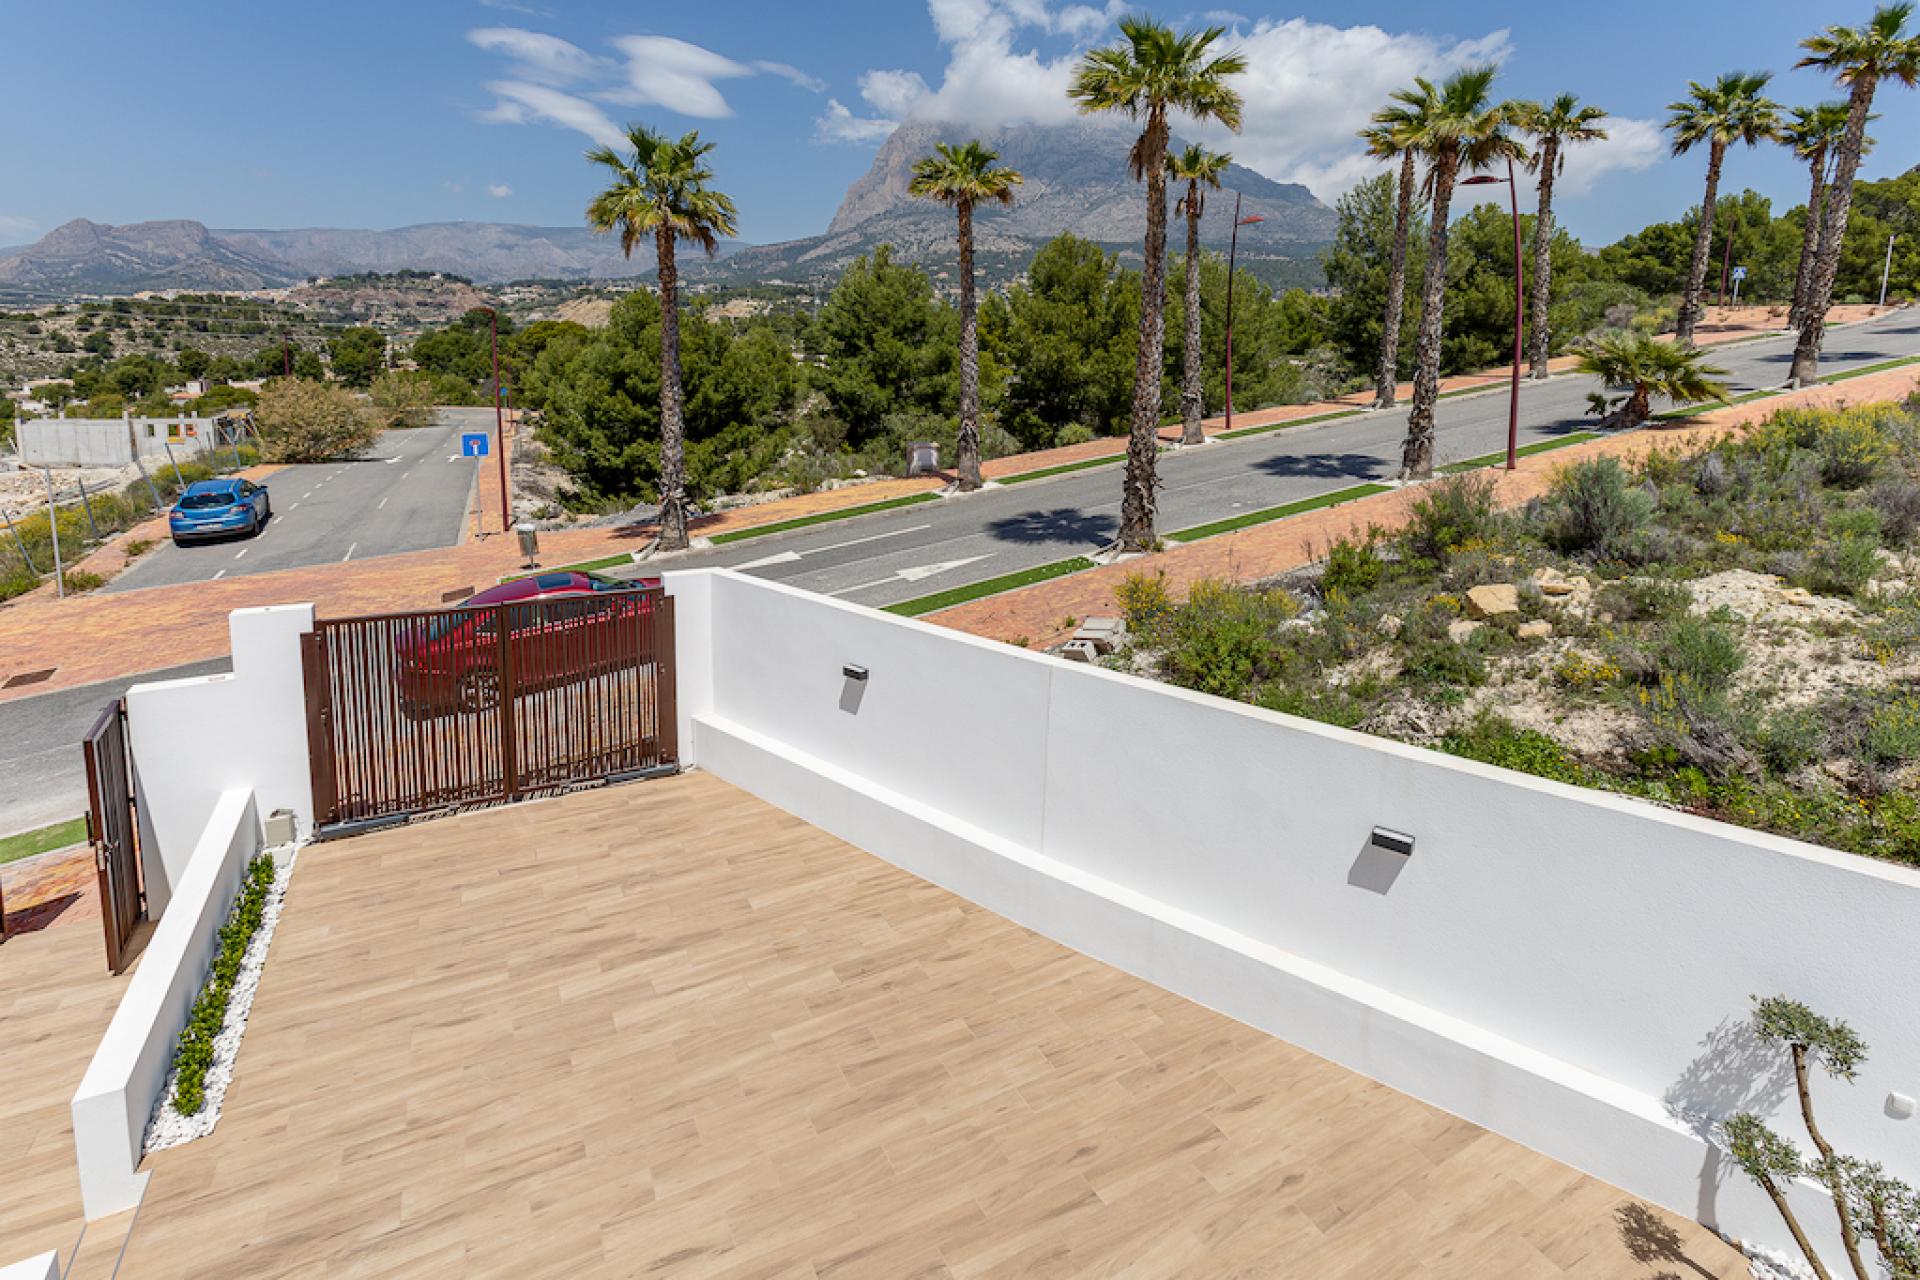 3 Slaapkamer Villa in Finestrat - Nieuwbouw in Medvilla Spanje